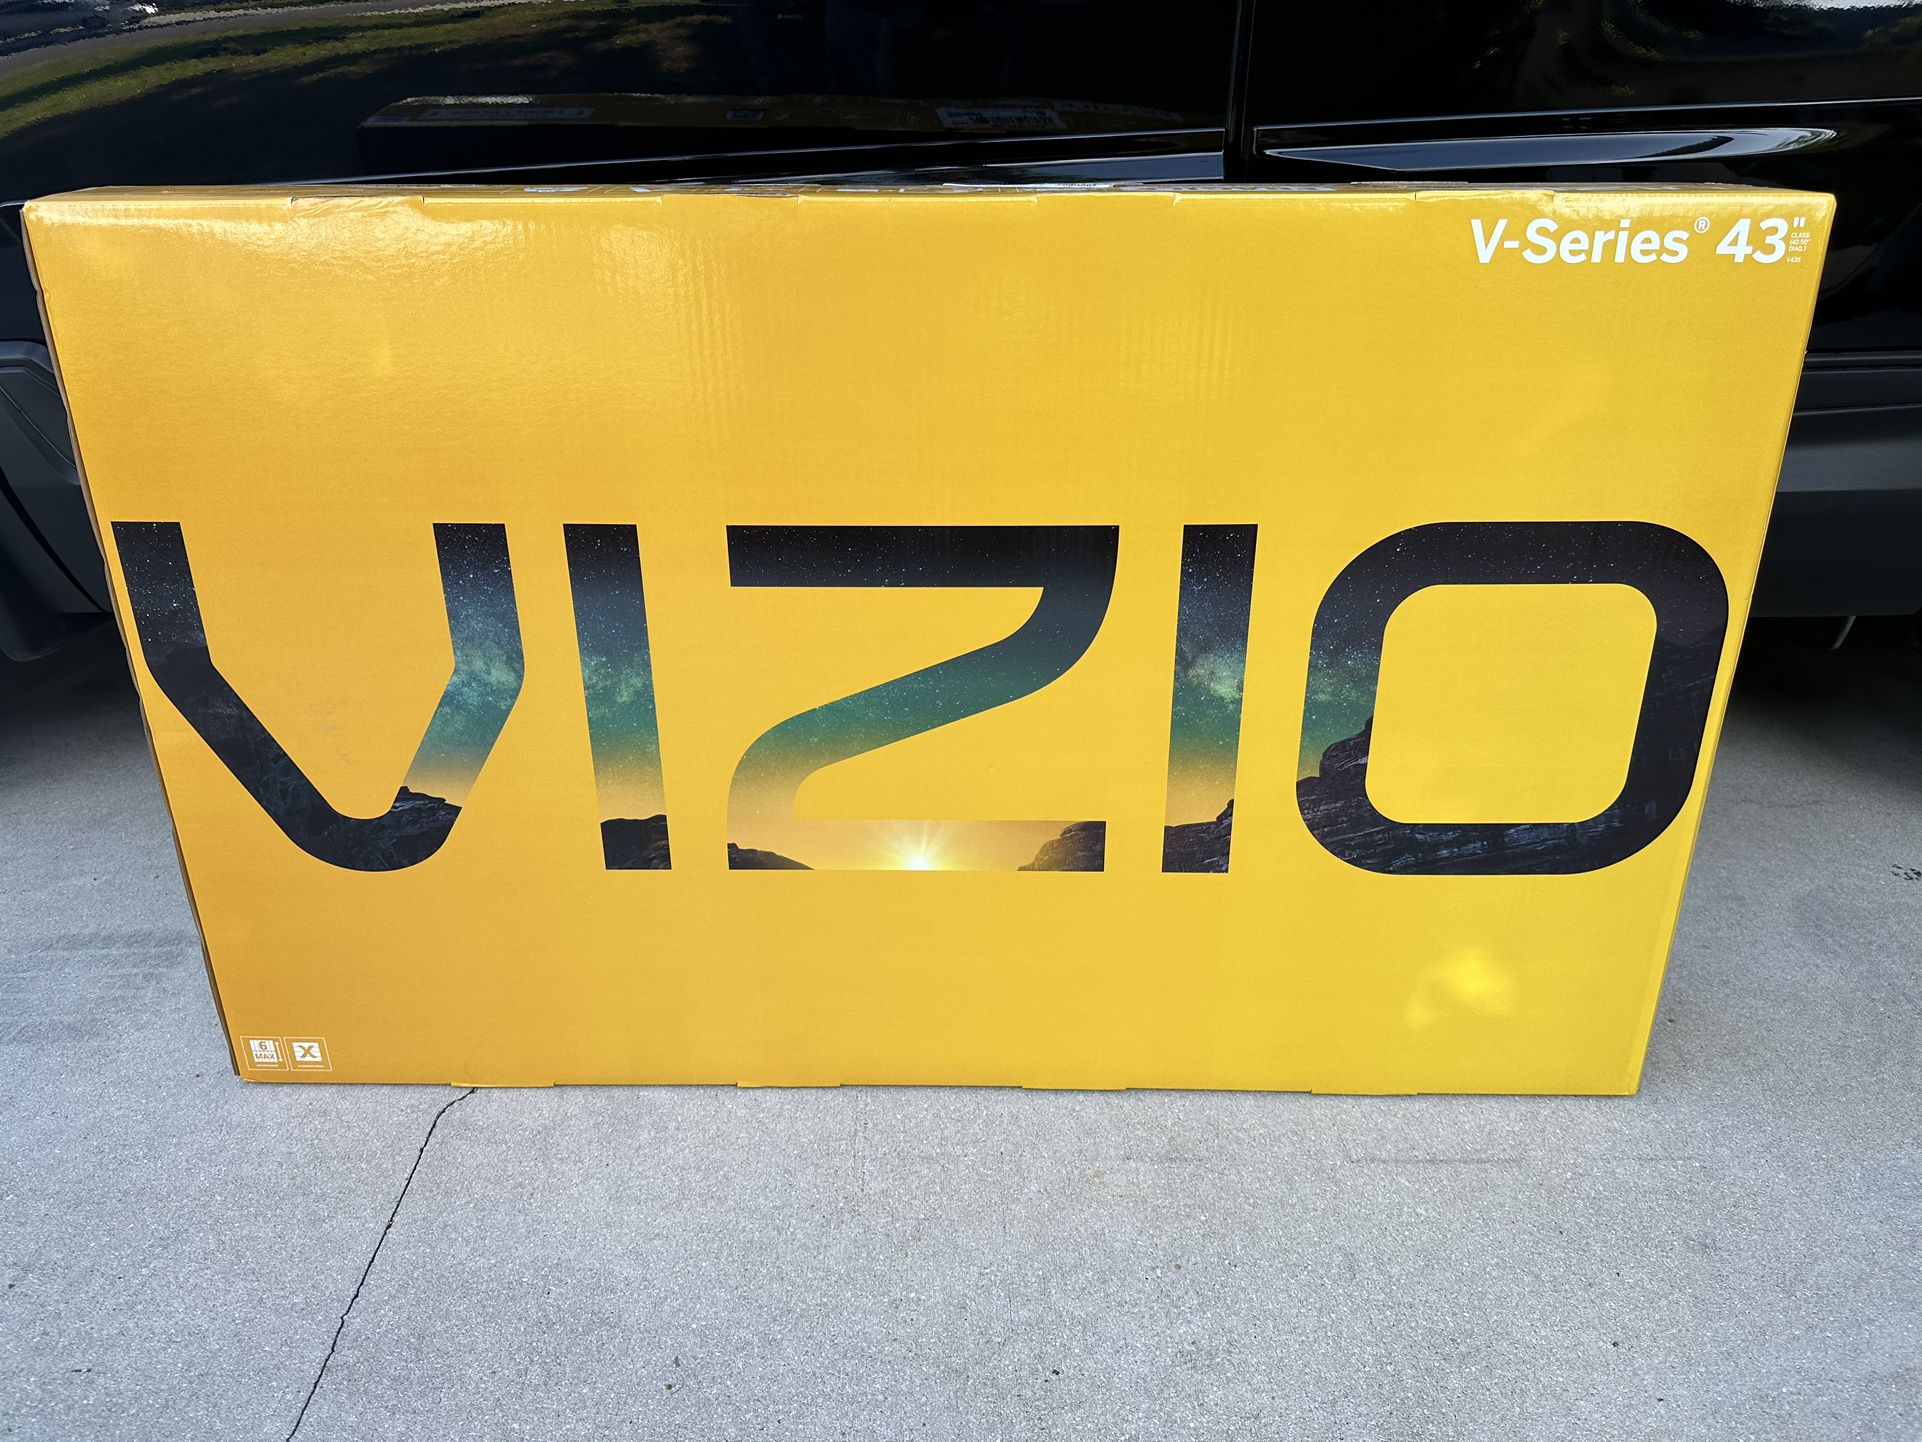 Vizio V-Series 43” 4K UHD HDR LED Smart TV  V435